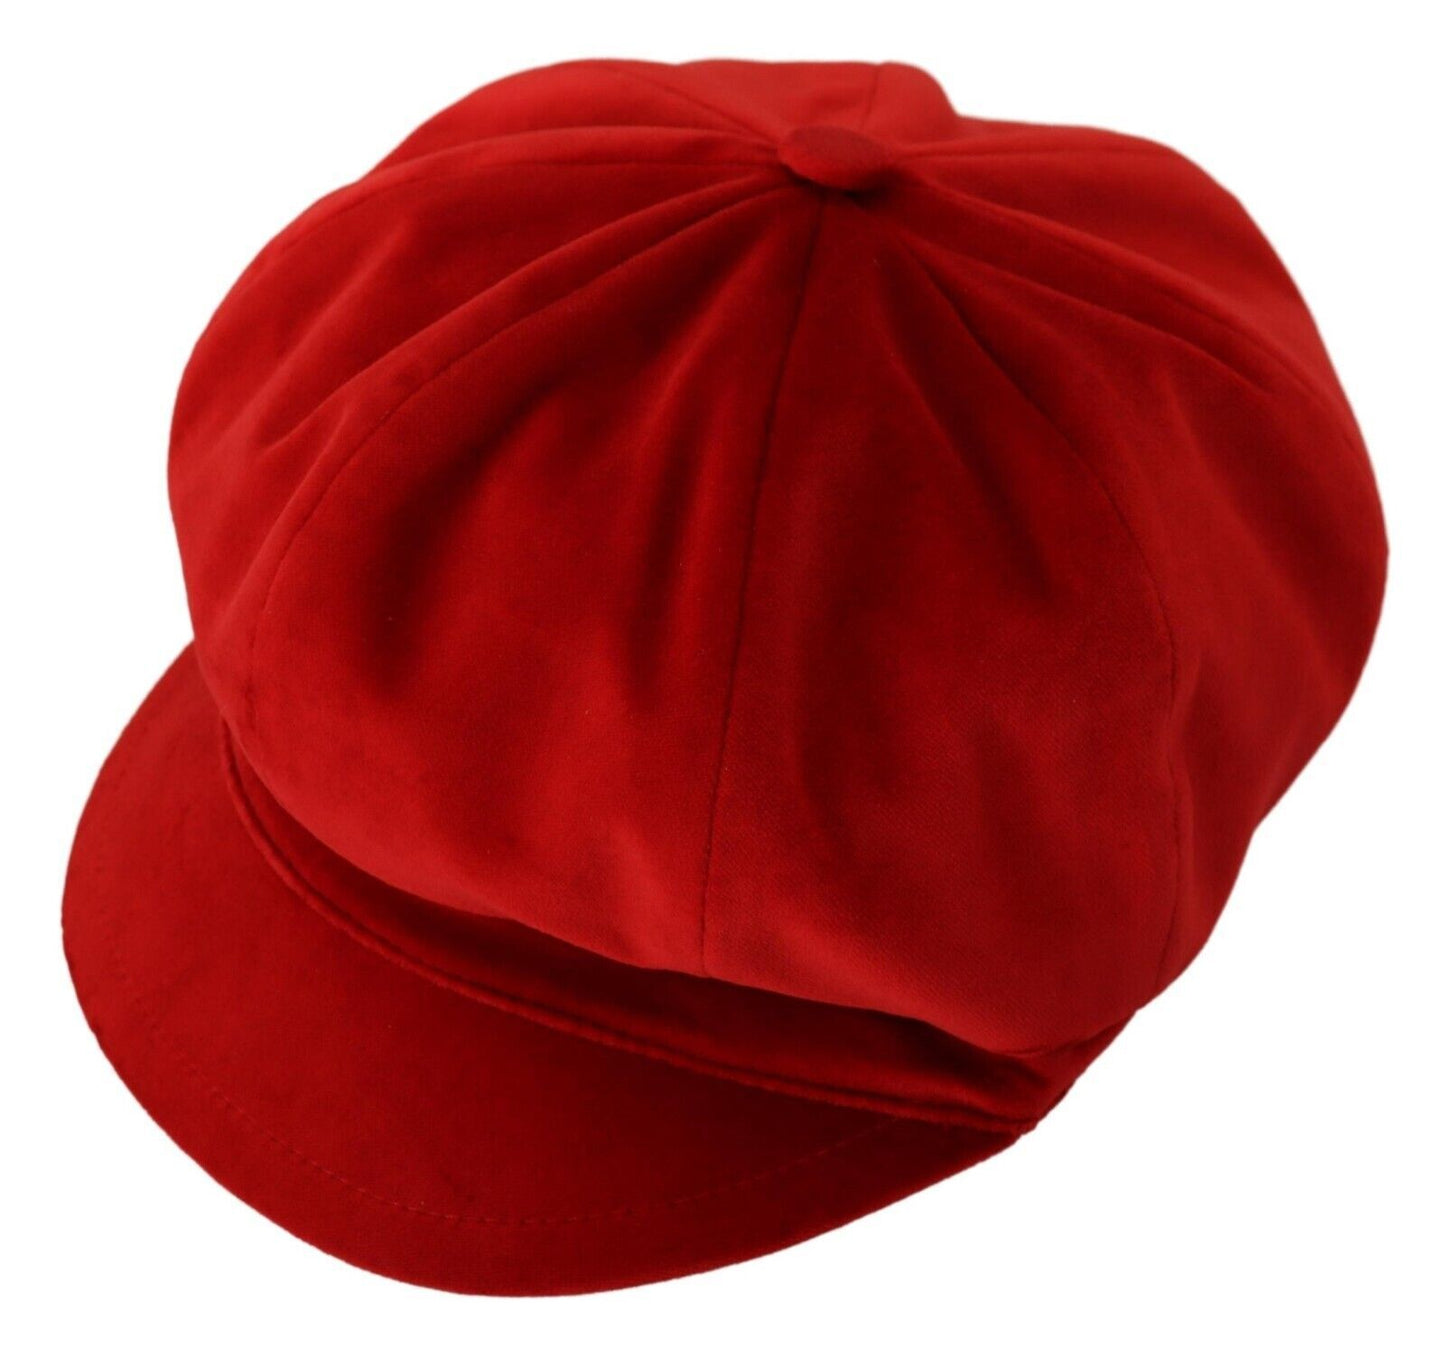 Elegant Red Cabbie Hat